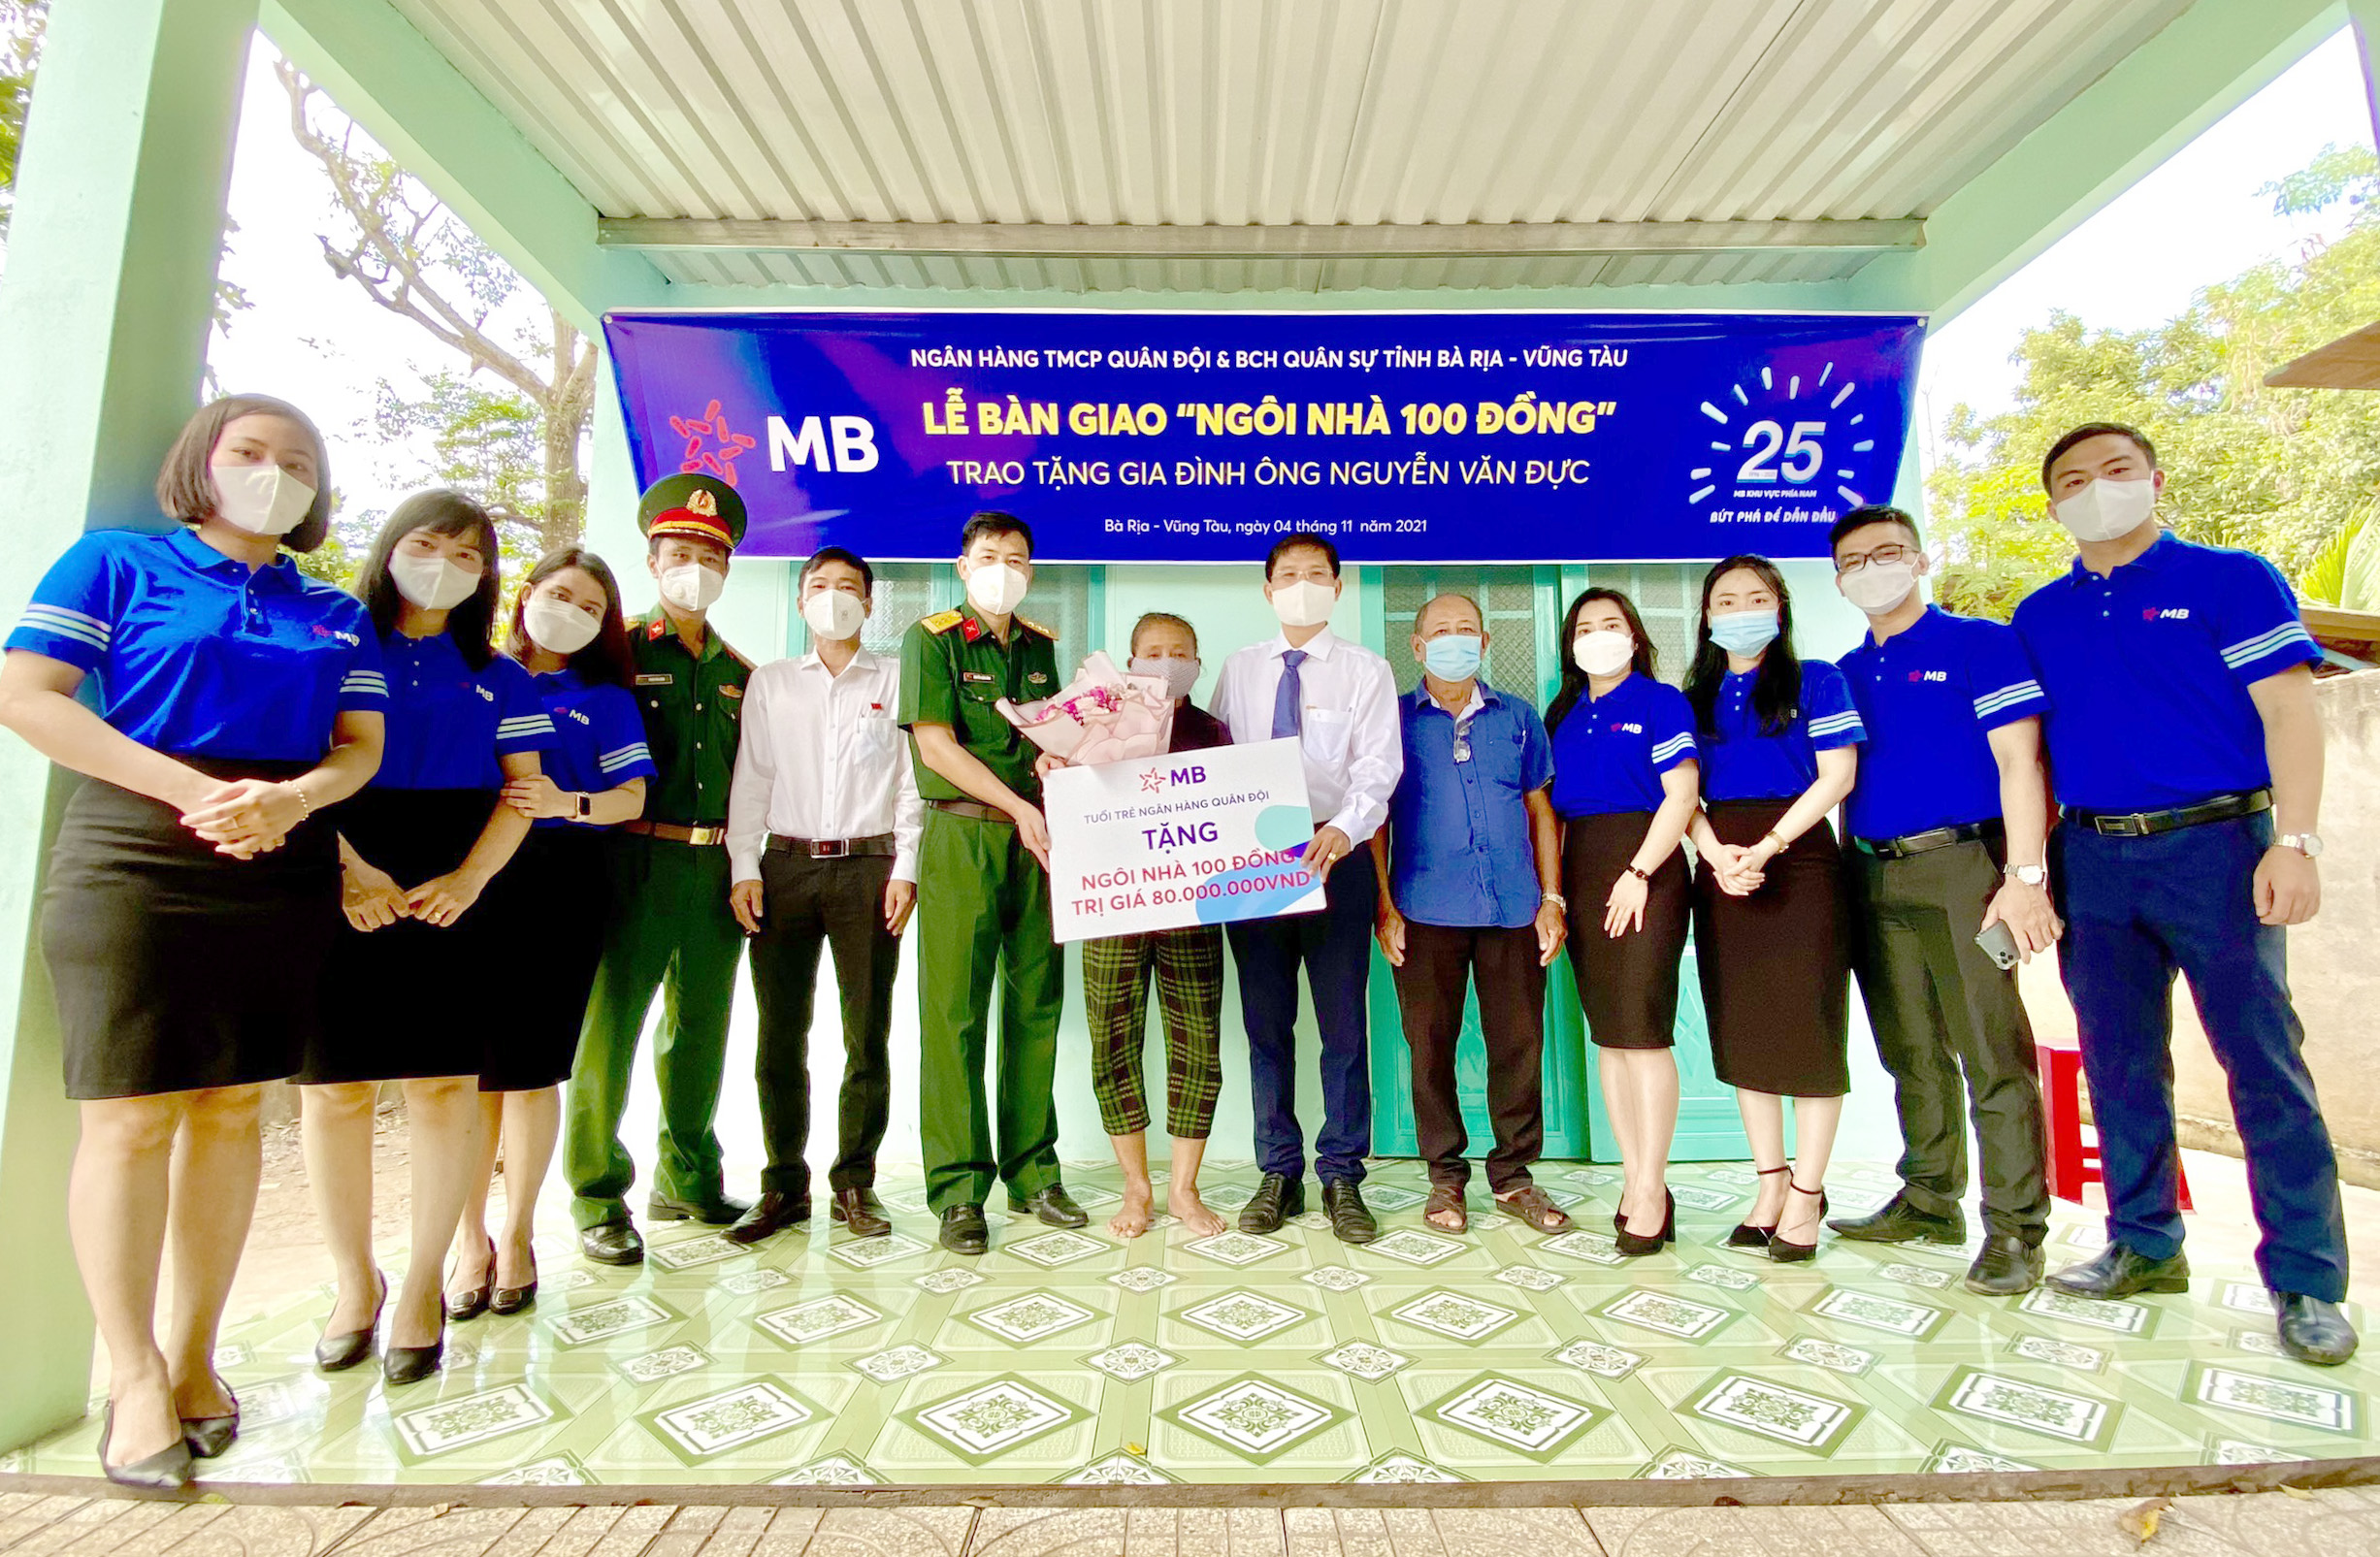 Đại diện Bộ CHQS tỉnh và Ngân hàng TMCP Quân đội chi nhánh Bà Rịa trao bảng tượng trưng tặng “Ngôi nhà 100 đồng” cho gia đình ông Nguyễn Văn Đực.